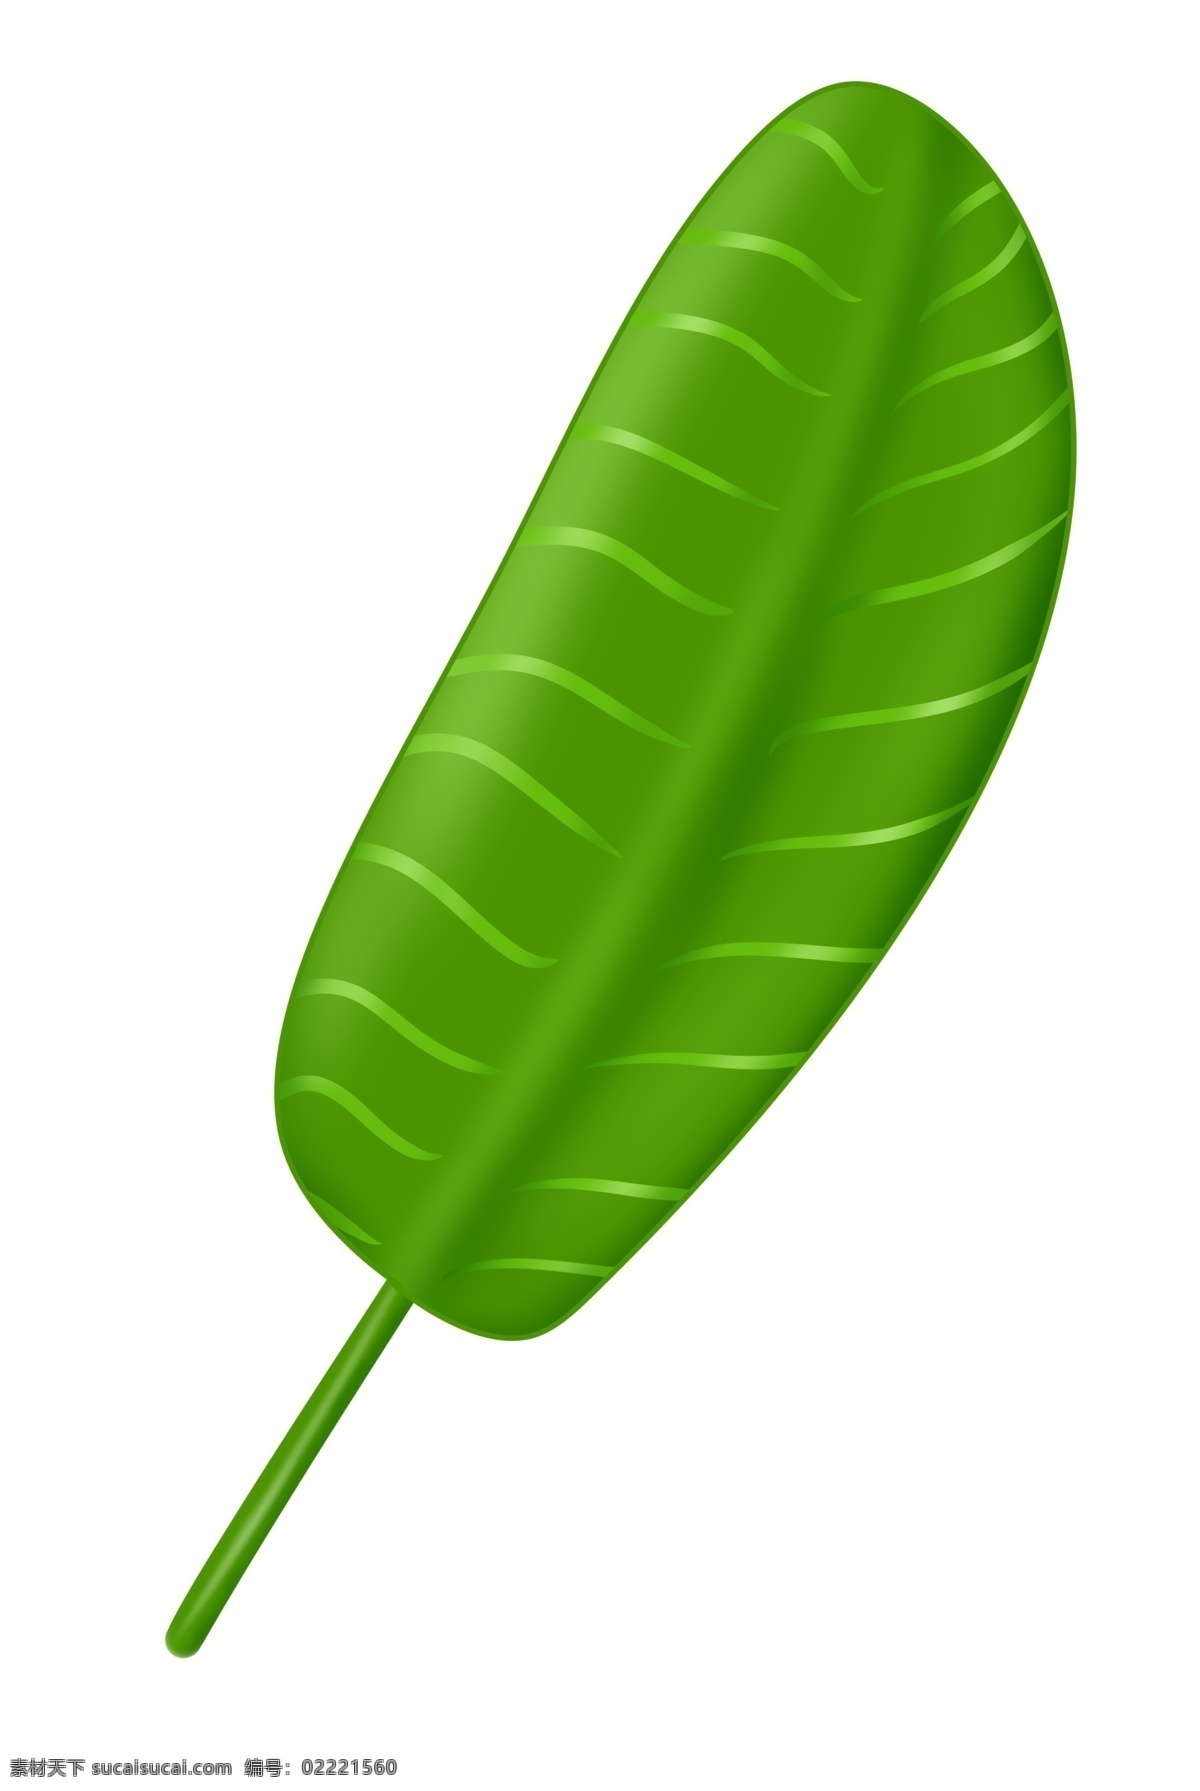 芭蕉树叶叶片 绿色 热带植物 叶子